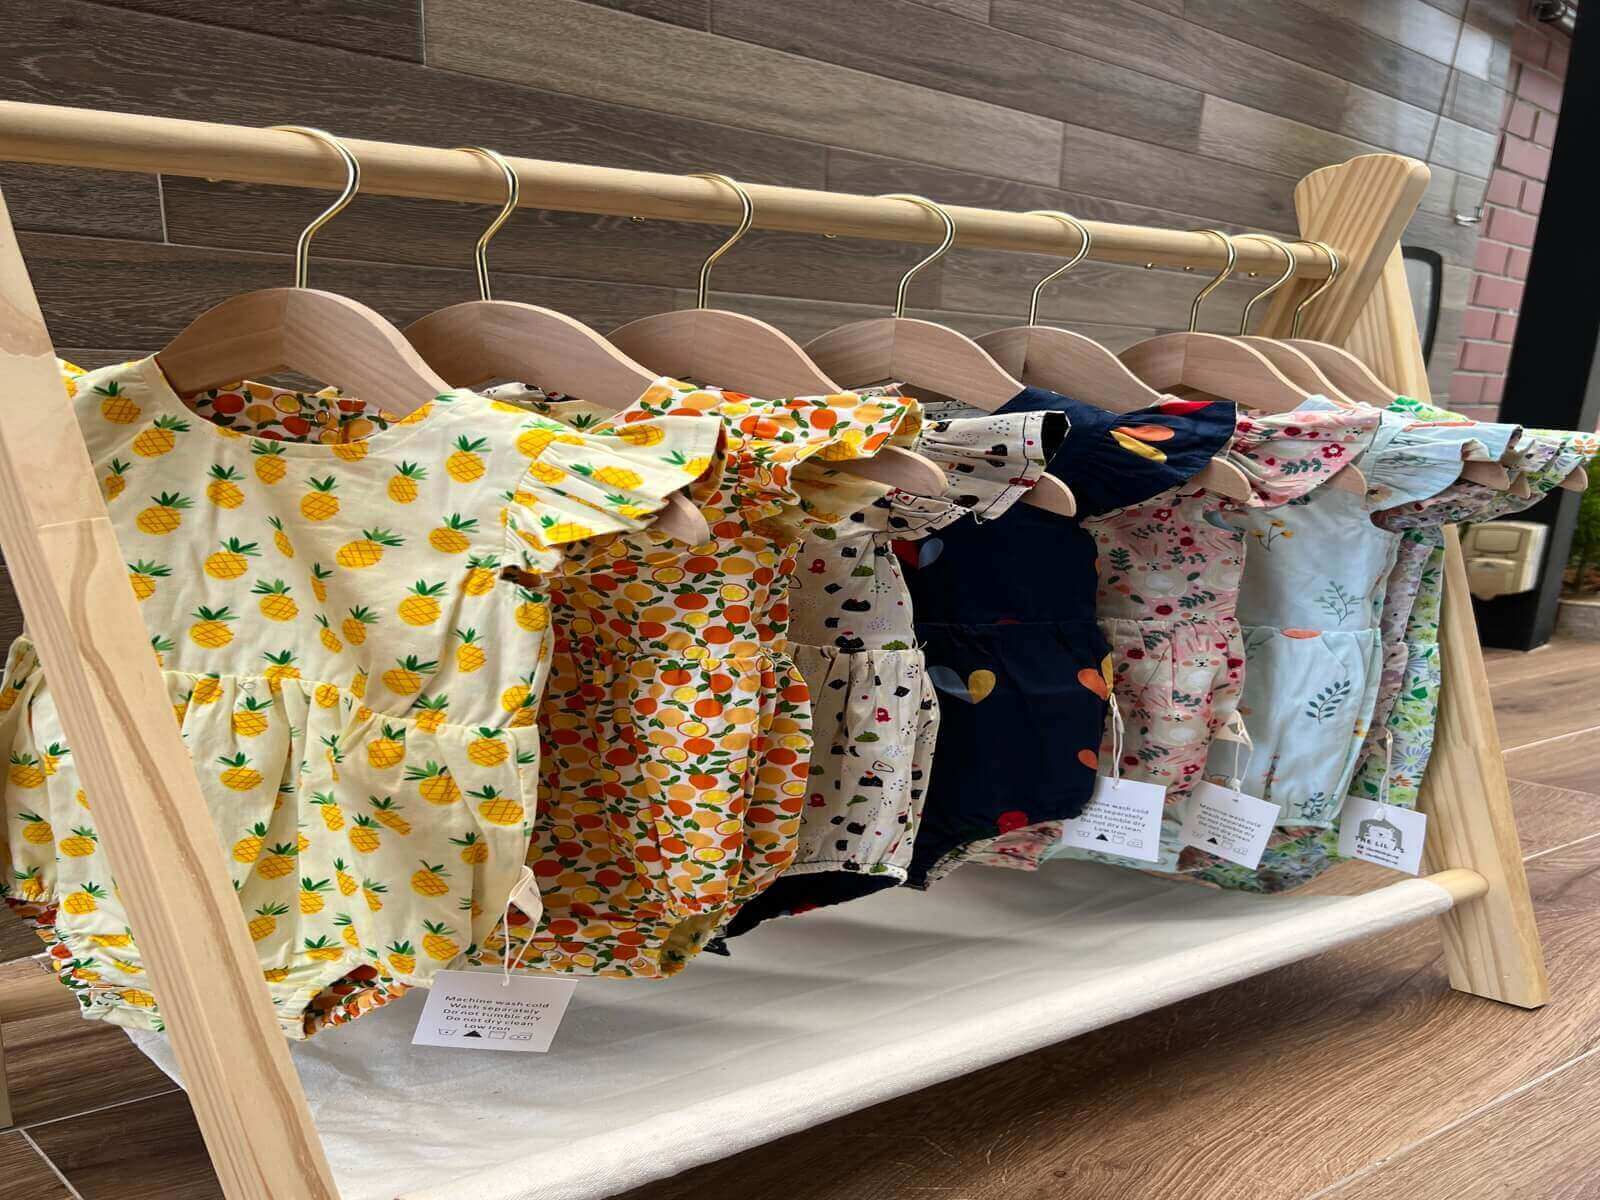 (已失效)Selling Reversible Baby Clothing Brand And Stocks At Cost Price